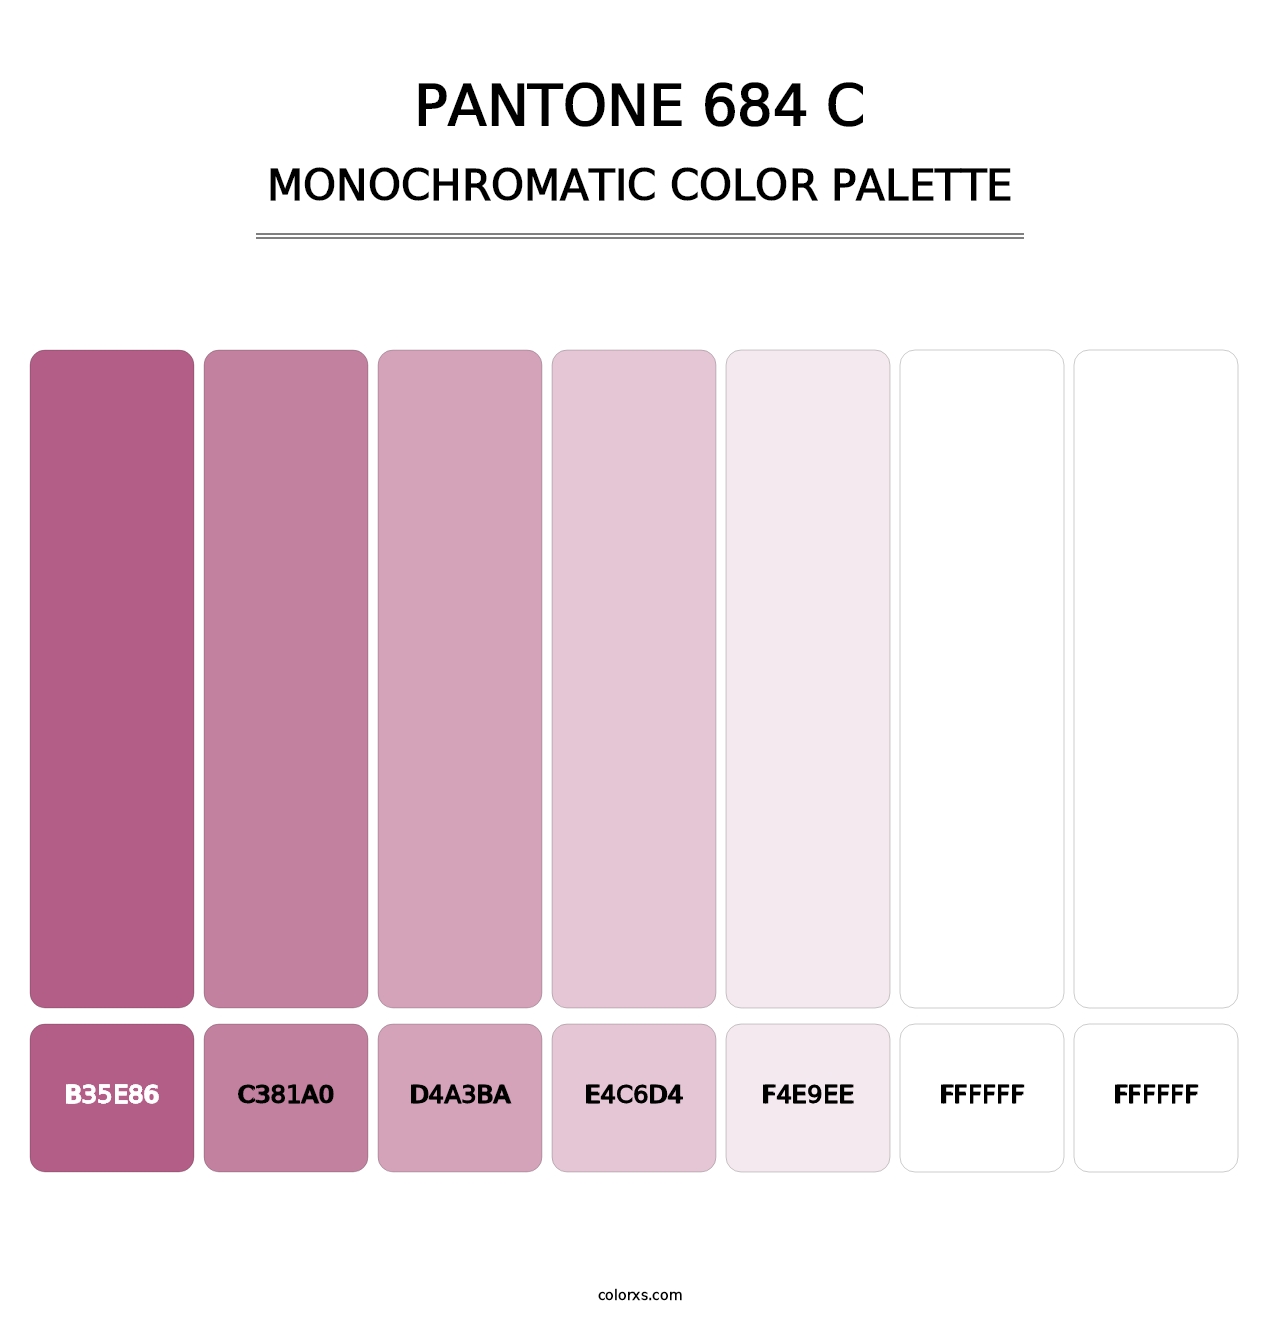 PANTONE 684 C - Monochromatic Color Palette